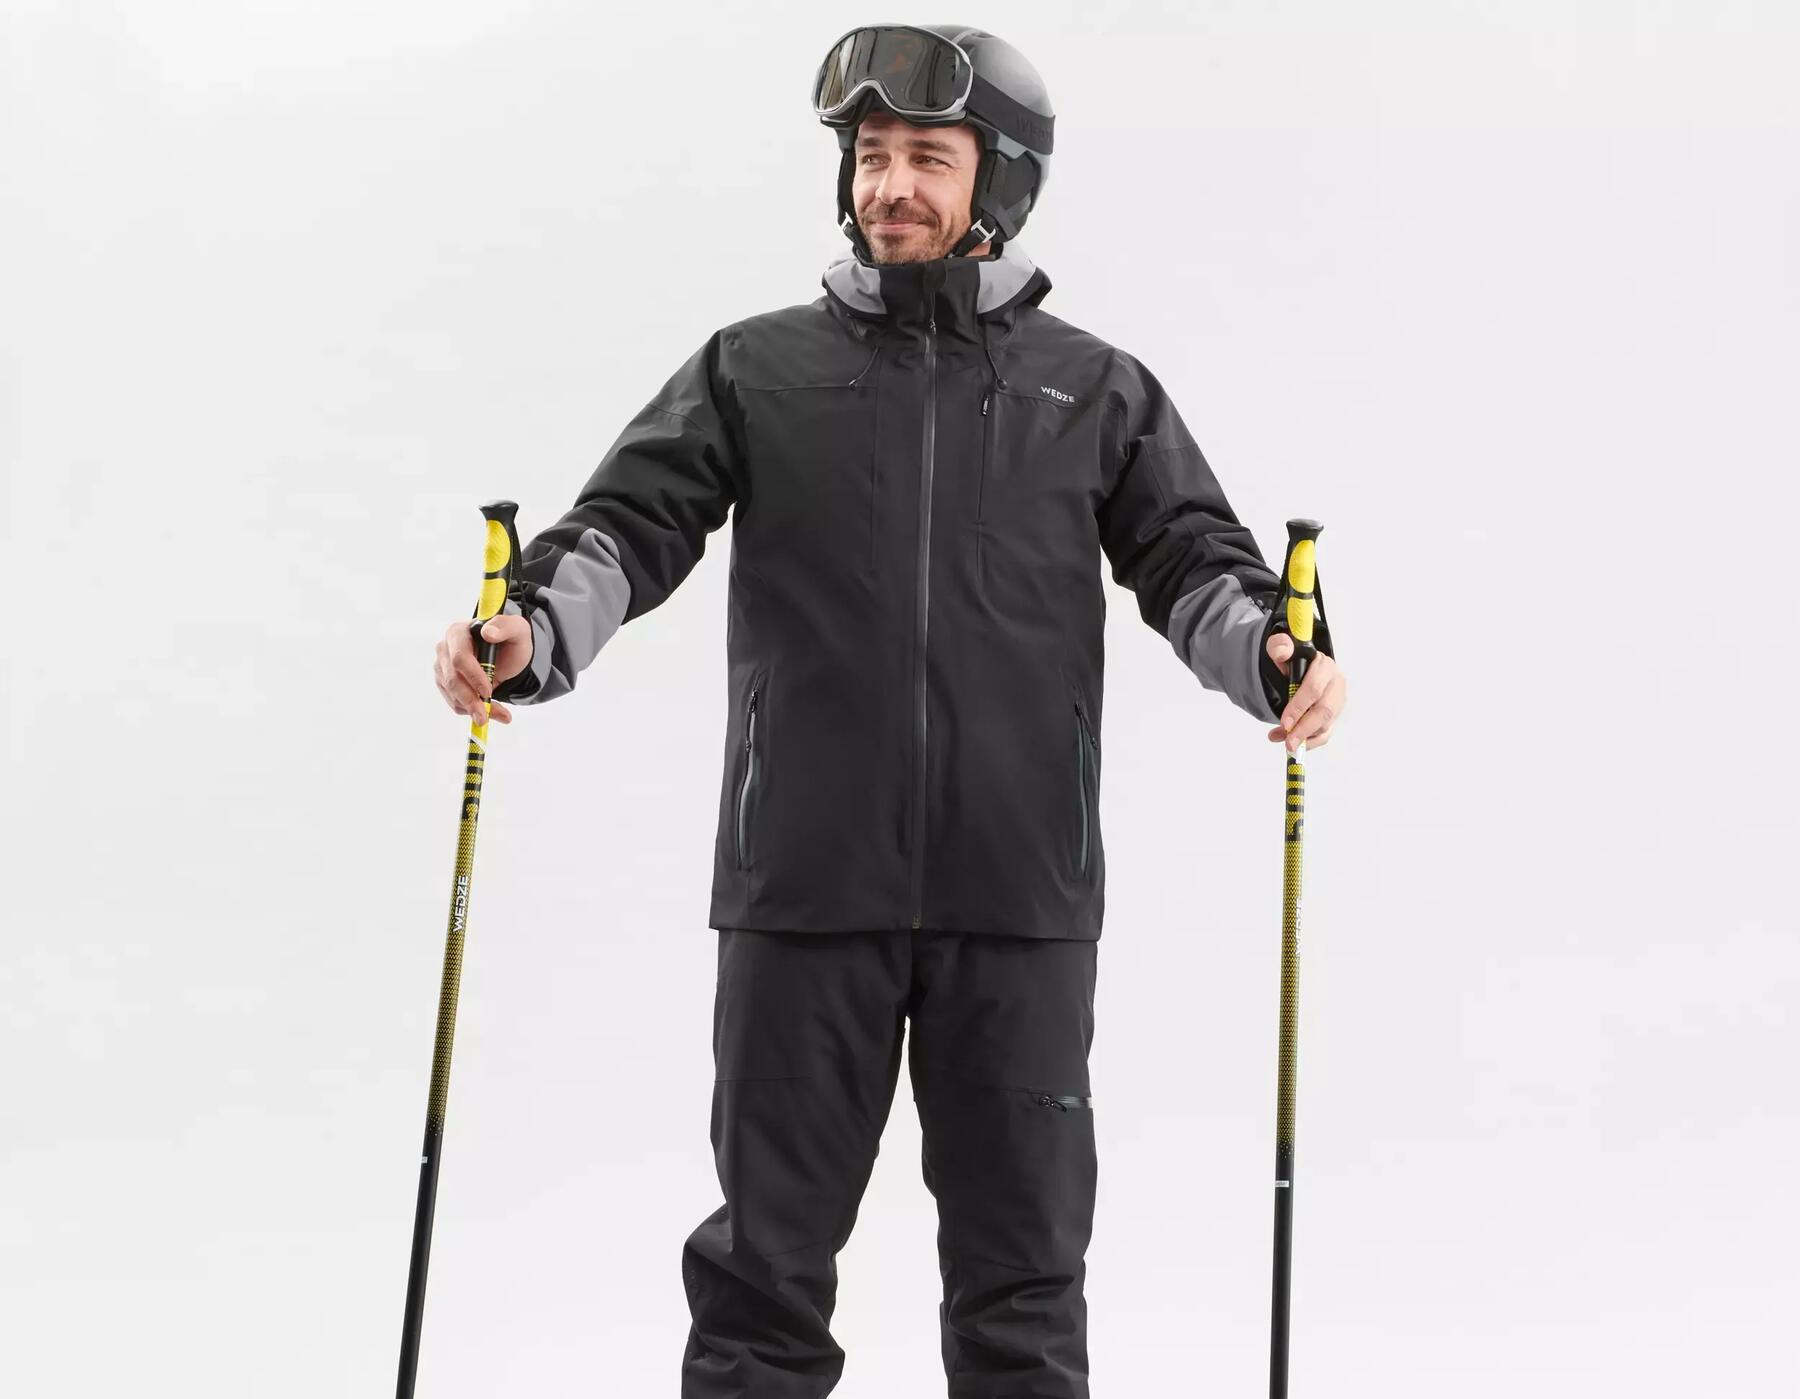 Hoe kies ik een ski jas?